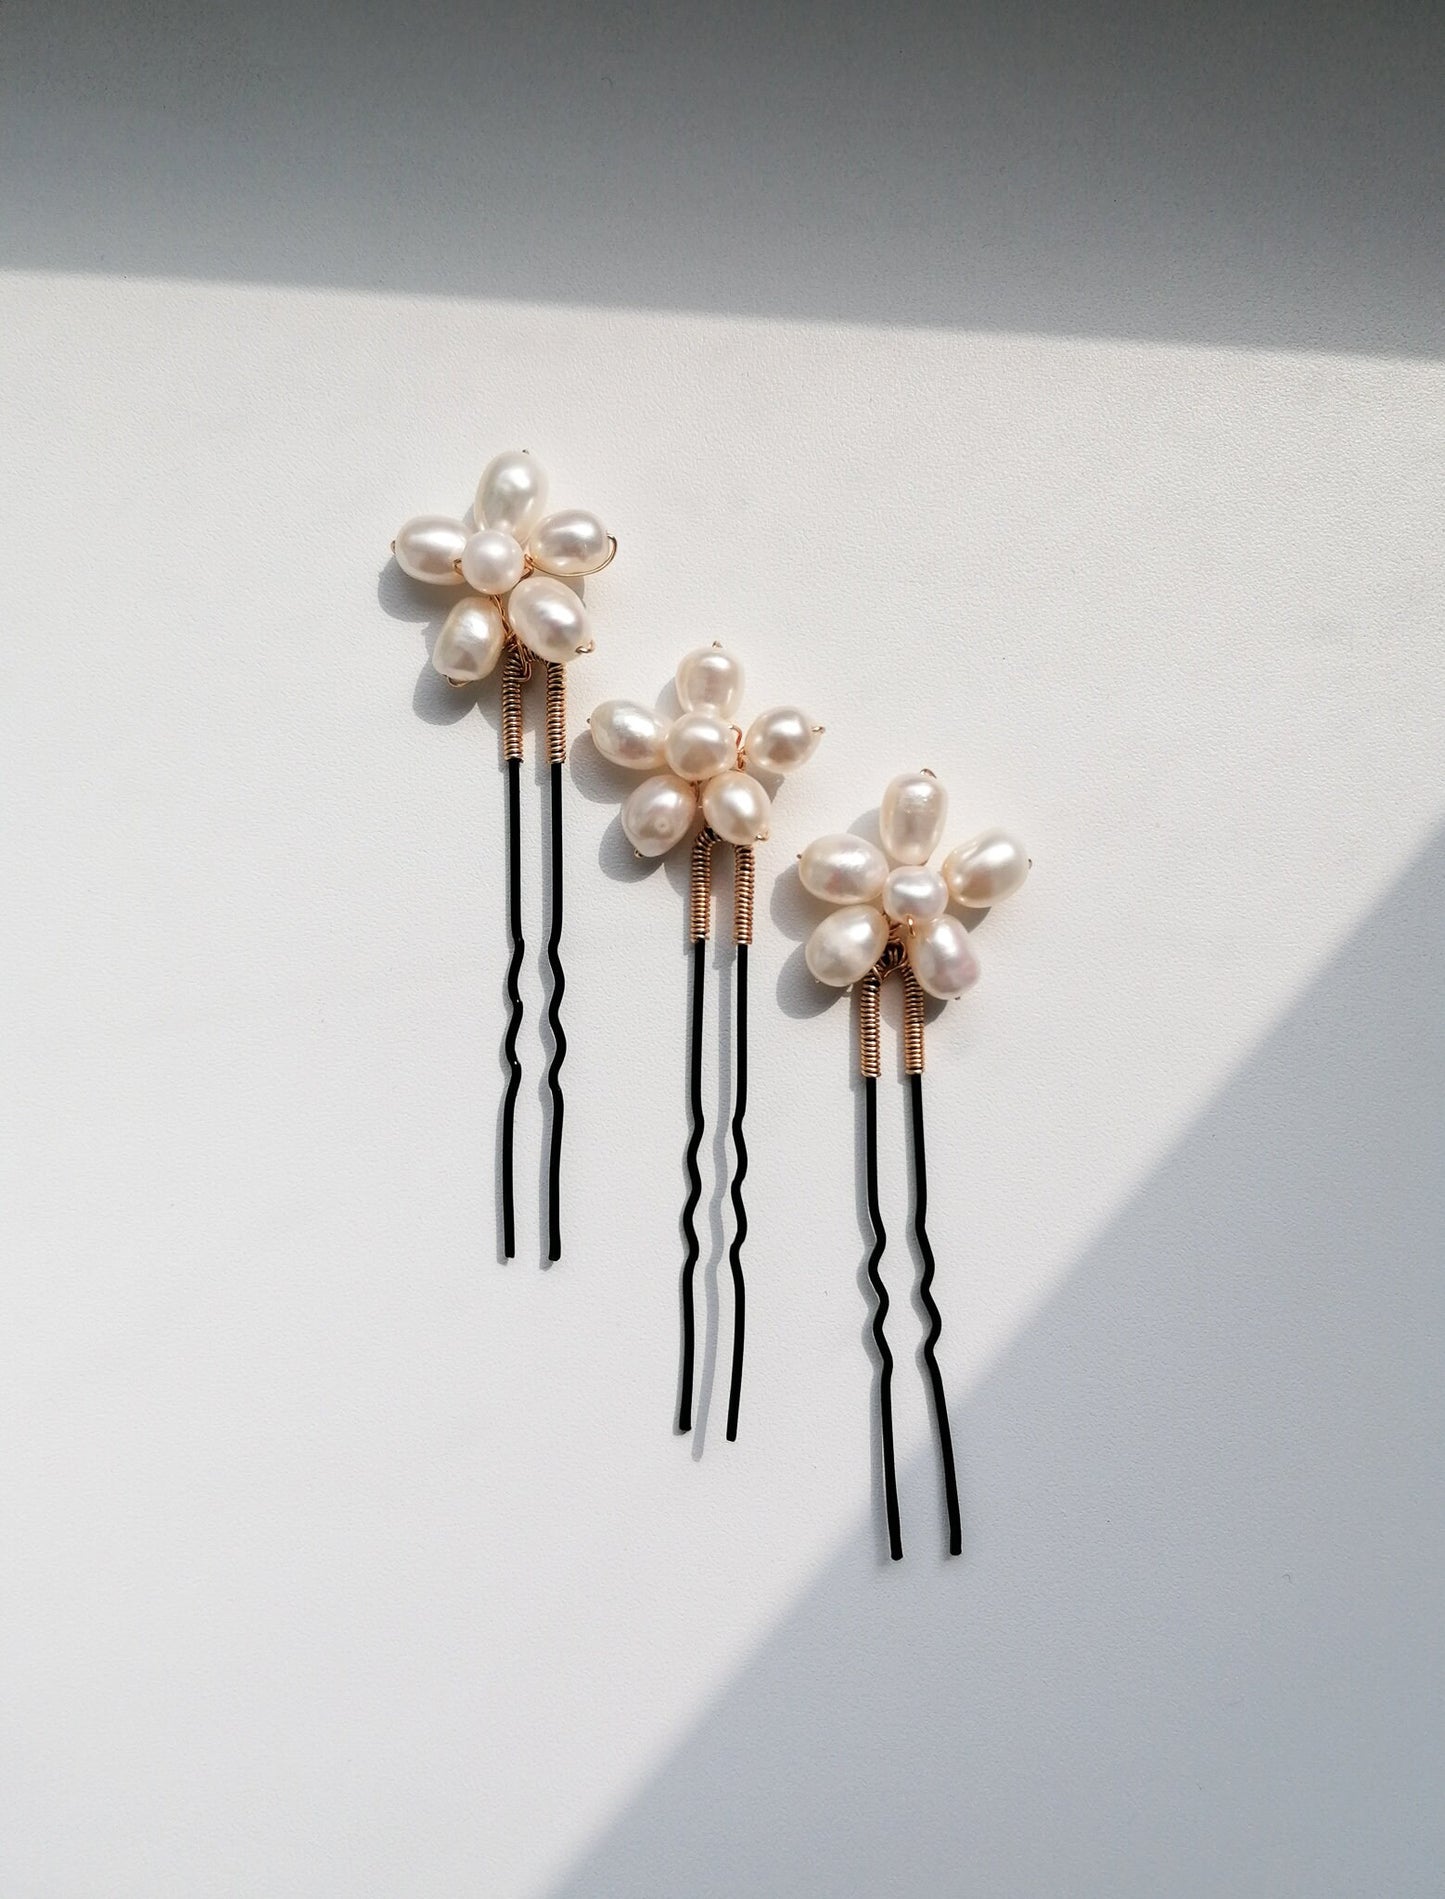 Floral pearl hair pins